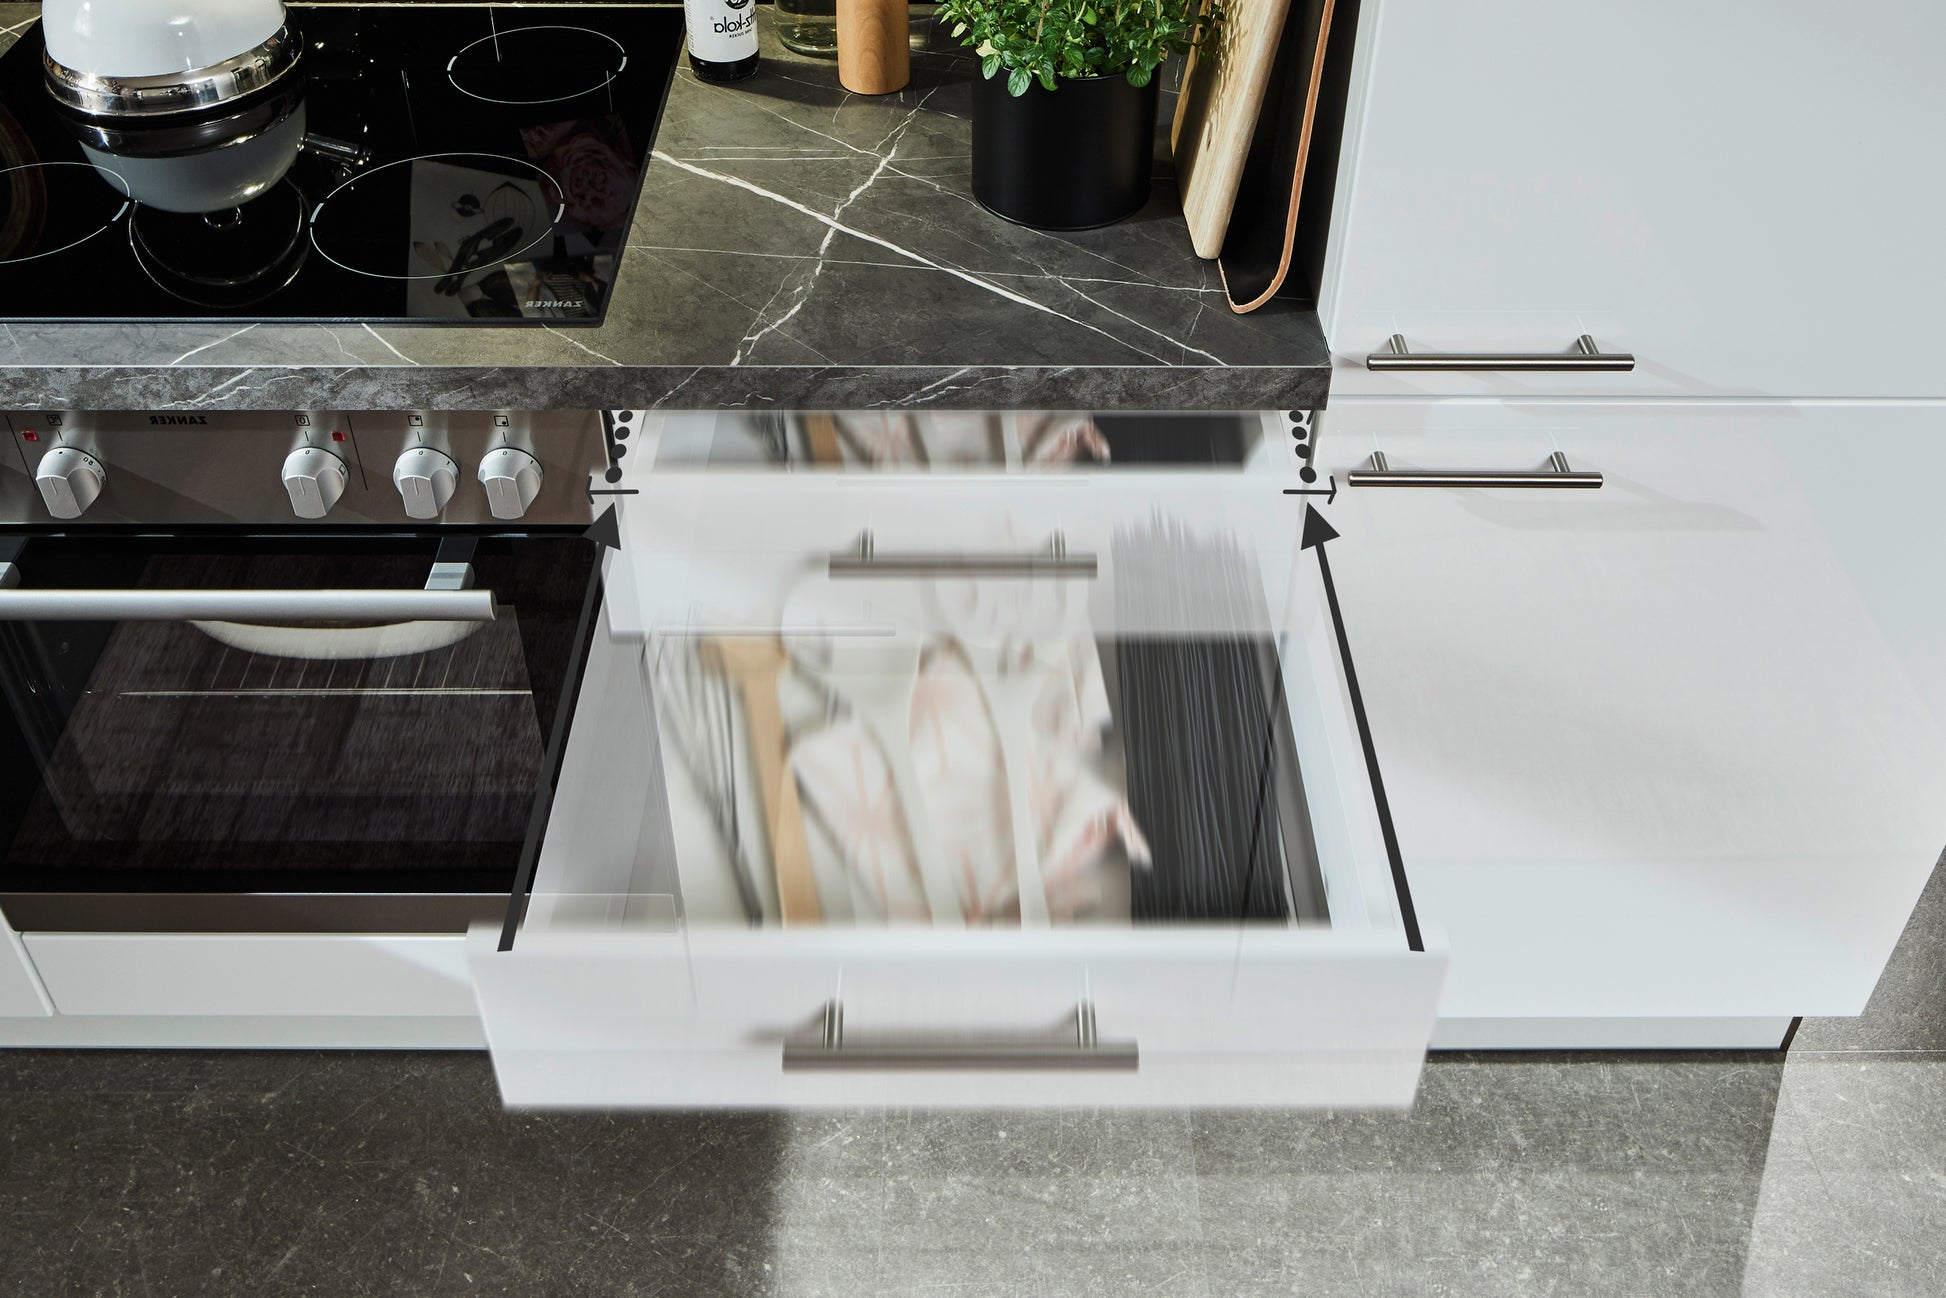 Küchenwinkel 285 x 165 cm, Schränke in Weiß Hochglanz , fertig montiert, Aufbau super-einfach, Komplettküche mit Einbaugeräten, Spüle und Mischbatterie + Ausschnitte für Spüle und Kochfeld Made in Germany